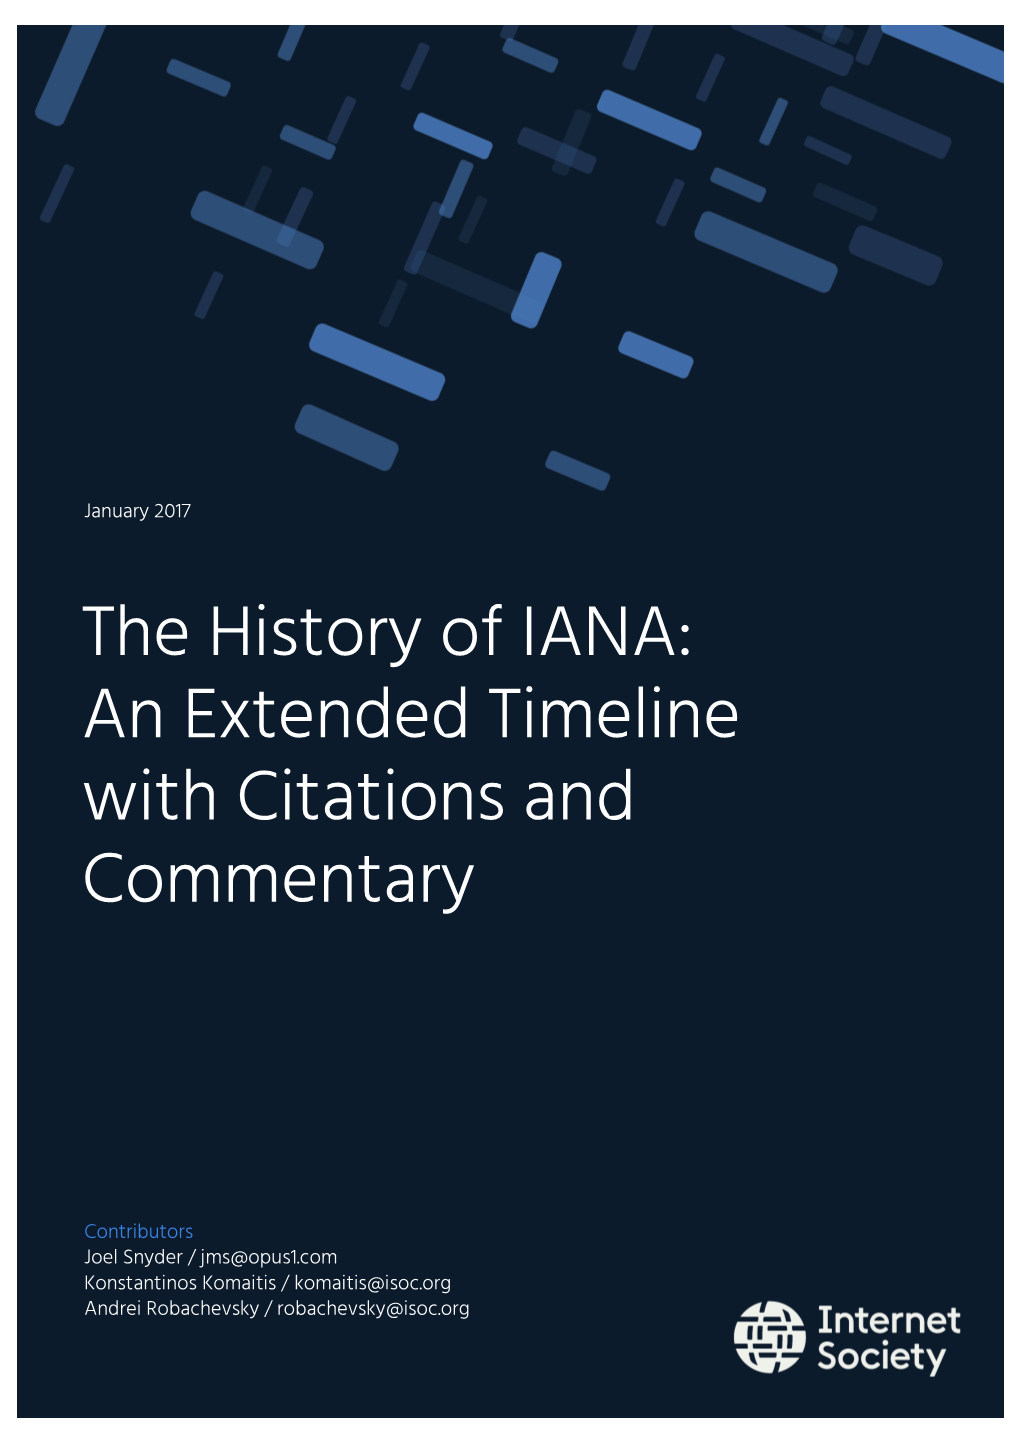 The IANA Timeline